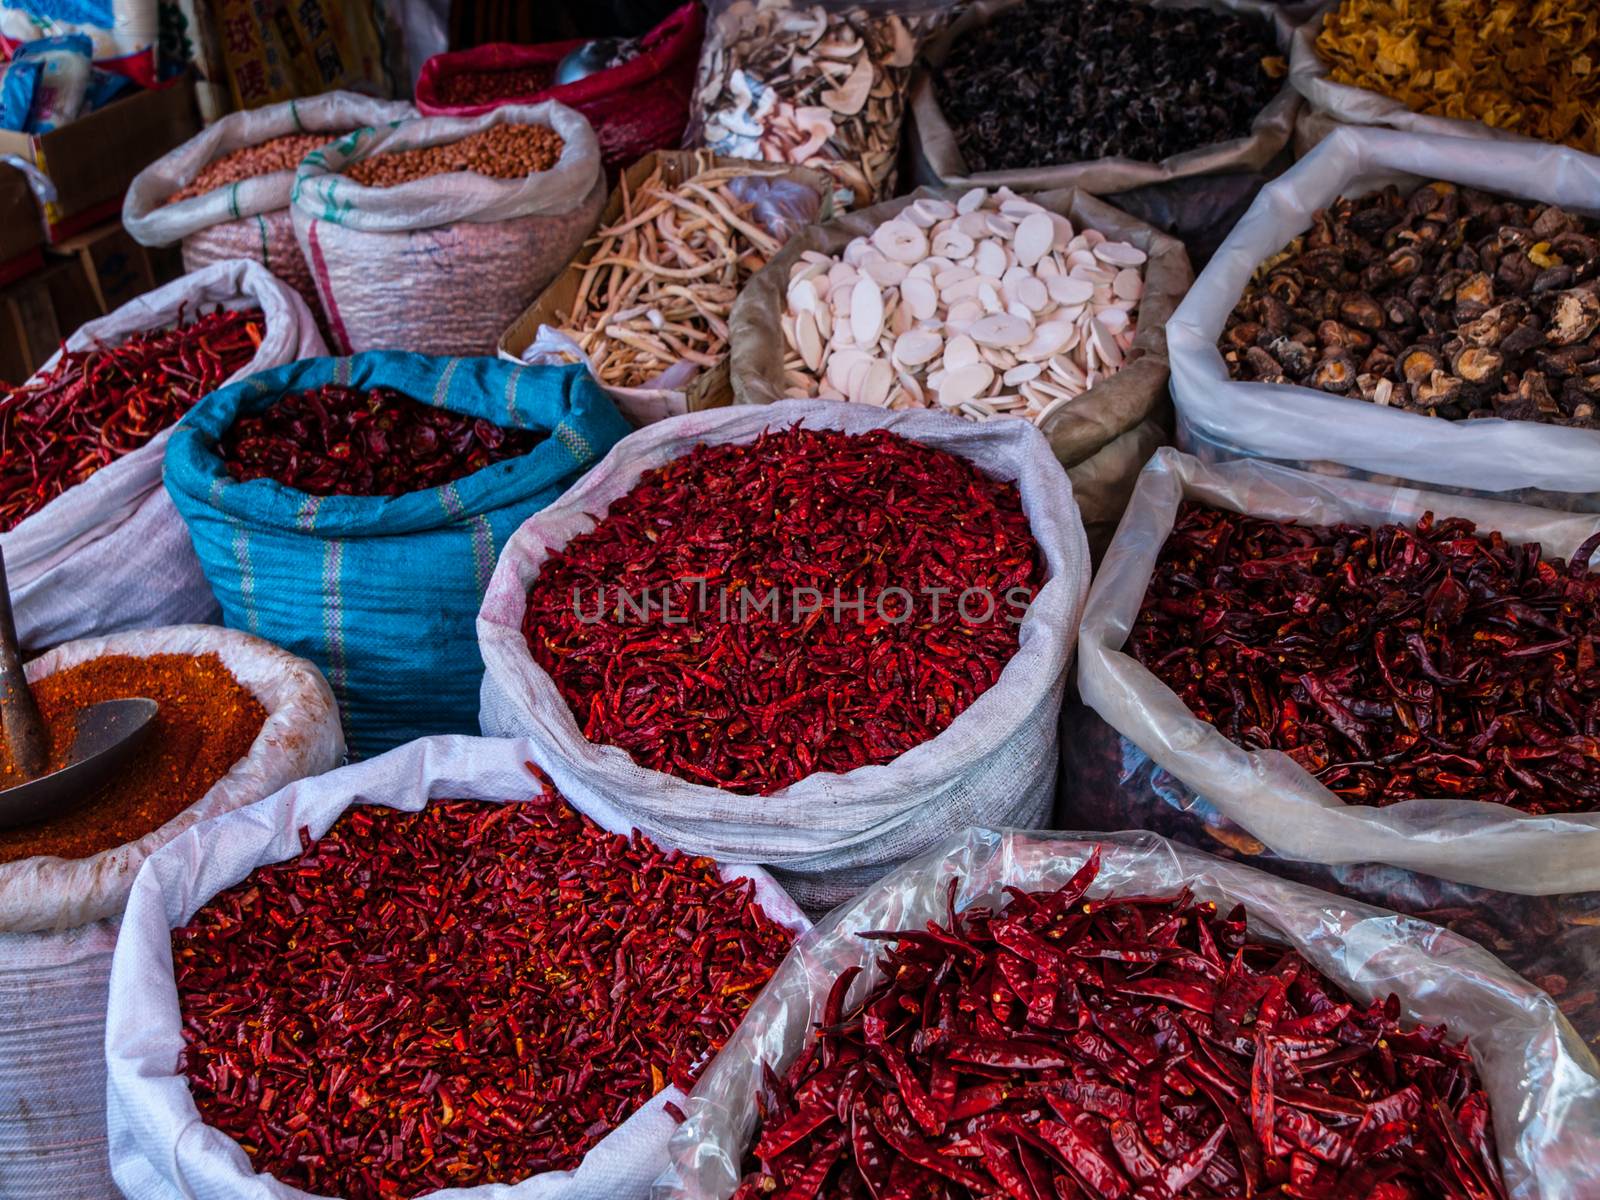 Typical asian chili market - hot stuff